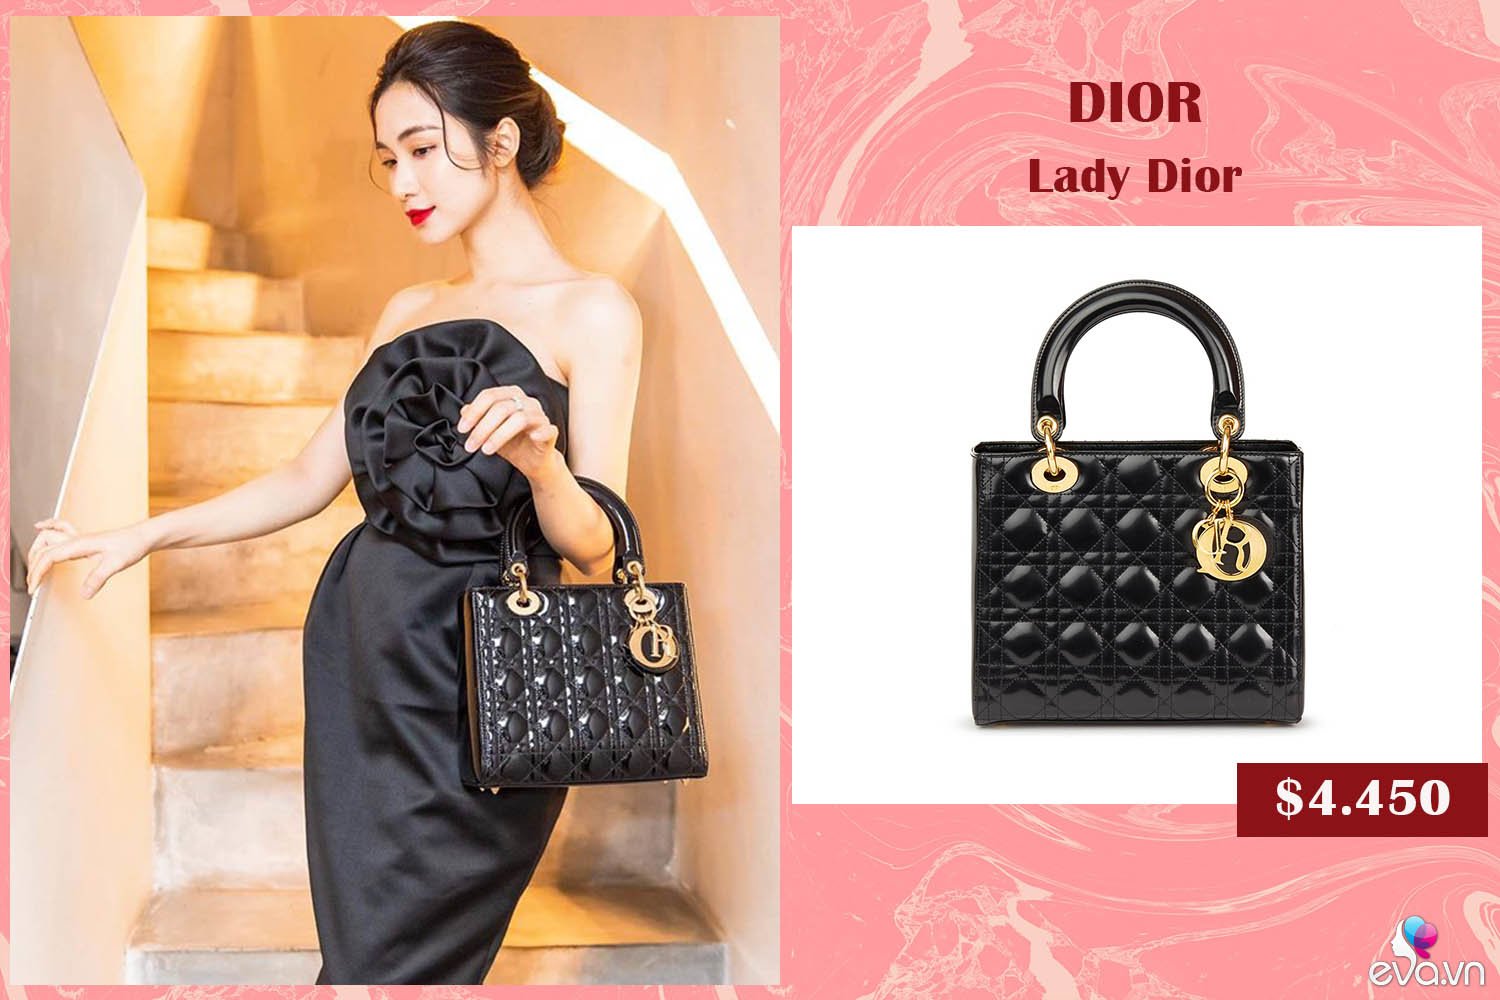  Bên cạnh mẫu túi Lady Dior hồng size nhỏ, Hòa Minzy cũng sắm về cho mình thiết kế có kích cỡ lớn hơn được làm từ da bóng sang chảnh. Để kết hợp với chiếc túi, cô nàng chọn khoác lên mình mẫu đầm đen gợi cảm có kiểu quây ngực, mang điểm nhấn là bông hoa 3D được xếp tỉ mỉ.